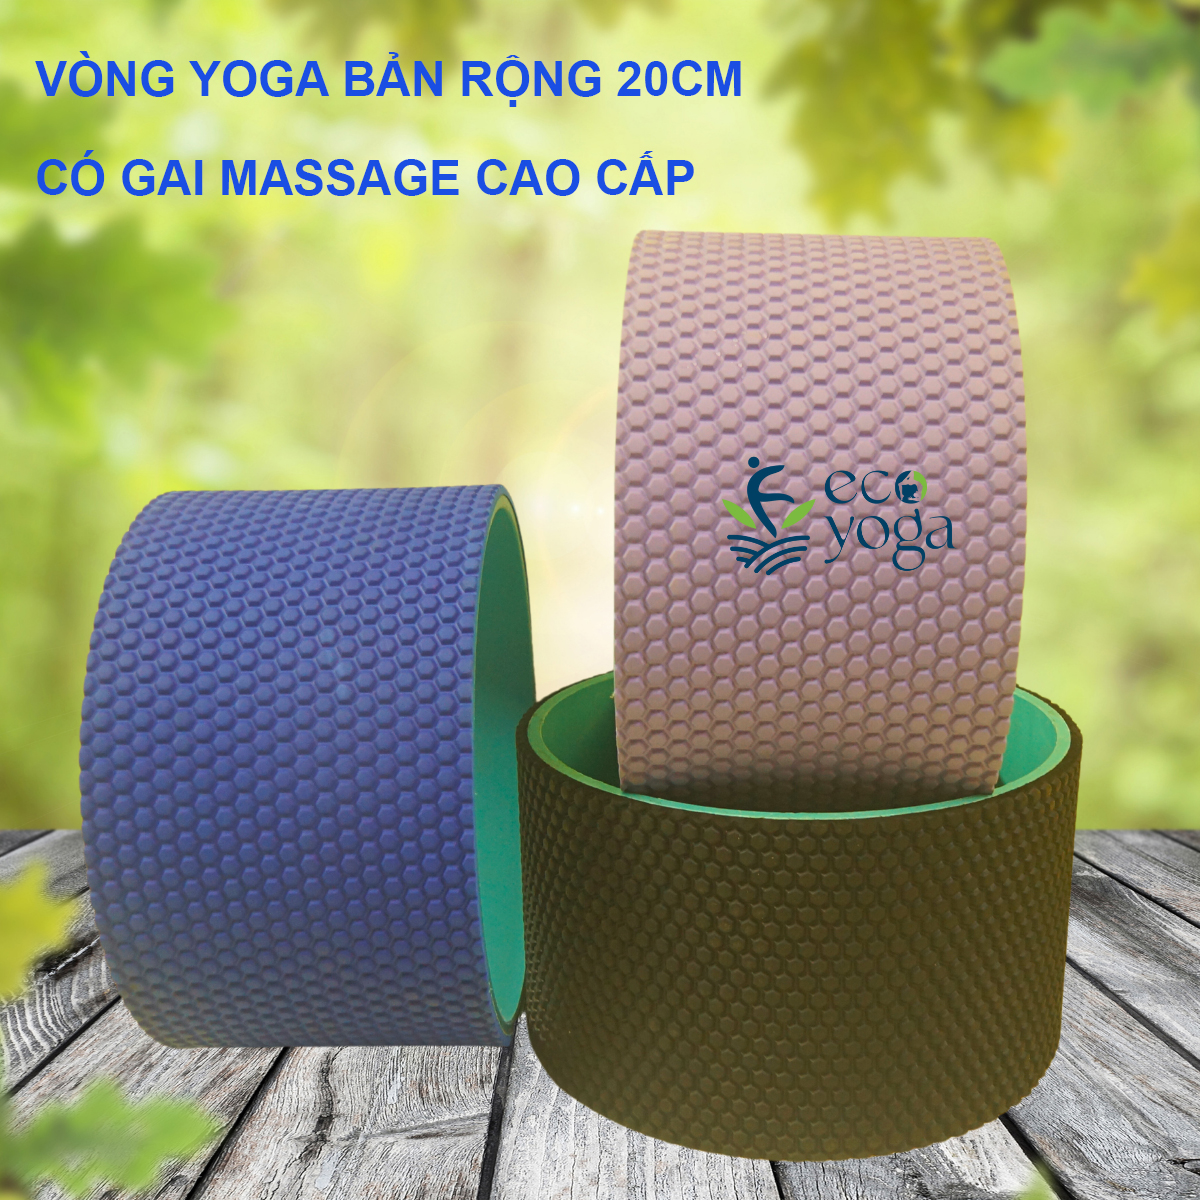 Vòng tập yoga bản rộng 20cm bề mặt gai 3D chịu lực 250kg , nhựa đổ ABS cao cấp, hỗ trợ tập yoga gym thể hình , massage lưng và hỗ trợ các tư thế chuyên nghiệp , kích thước 34x34x20cm - Hàng Chính Hãng